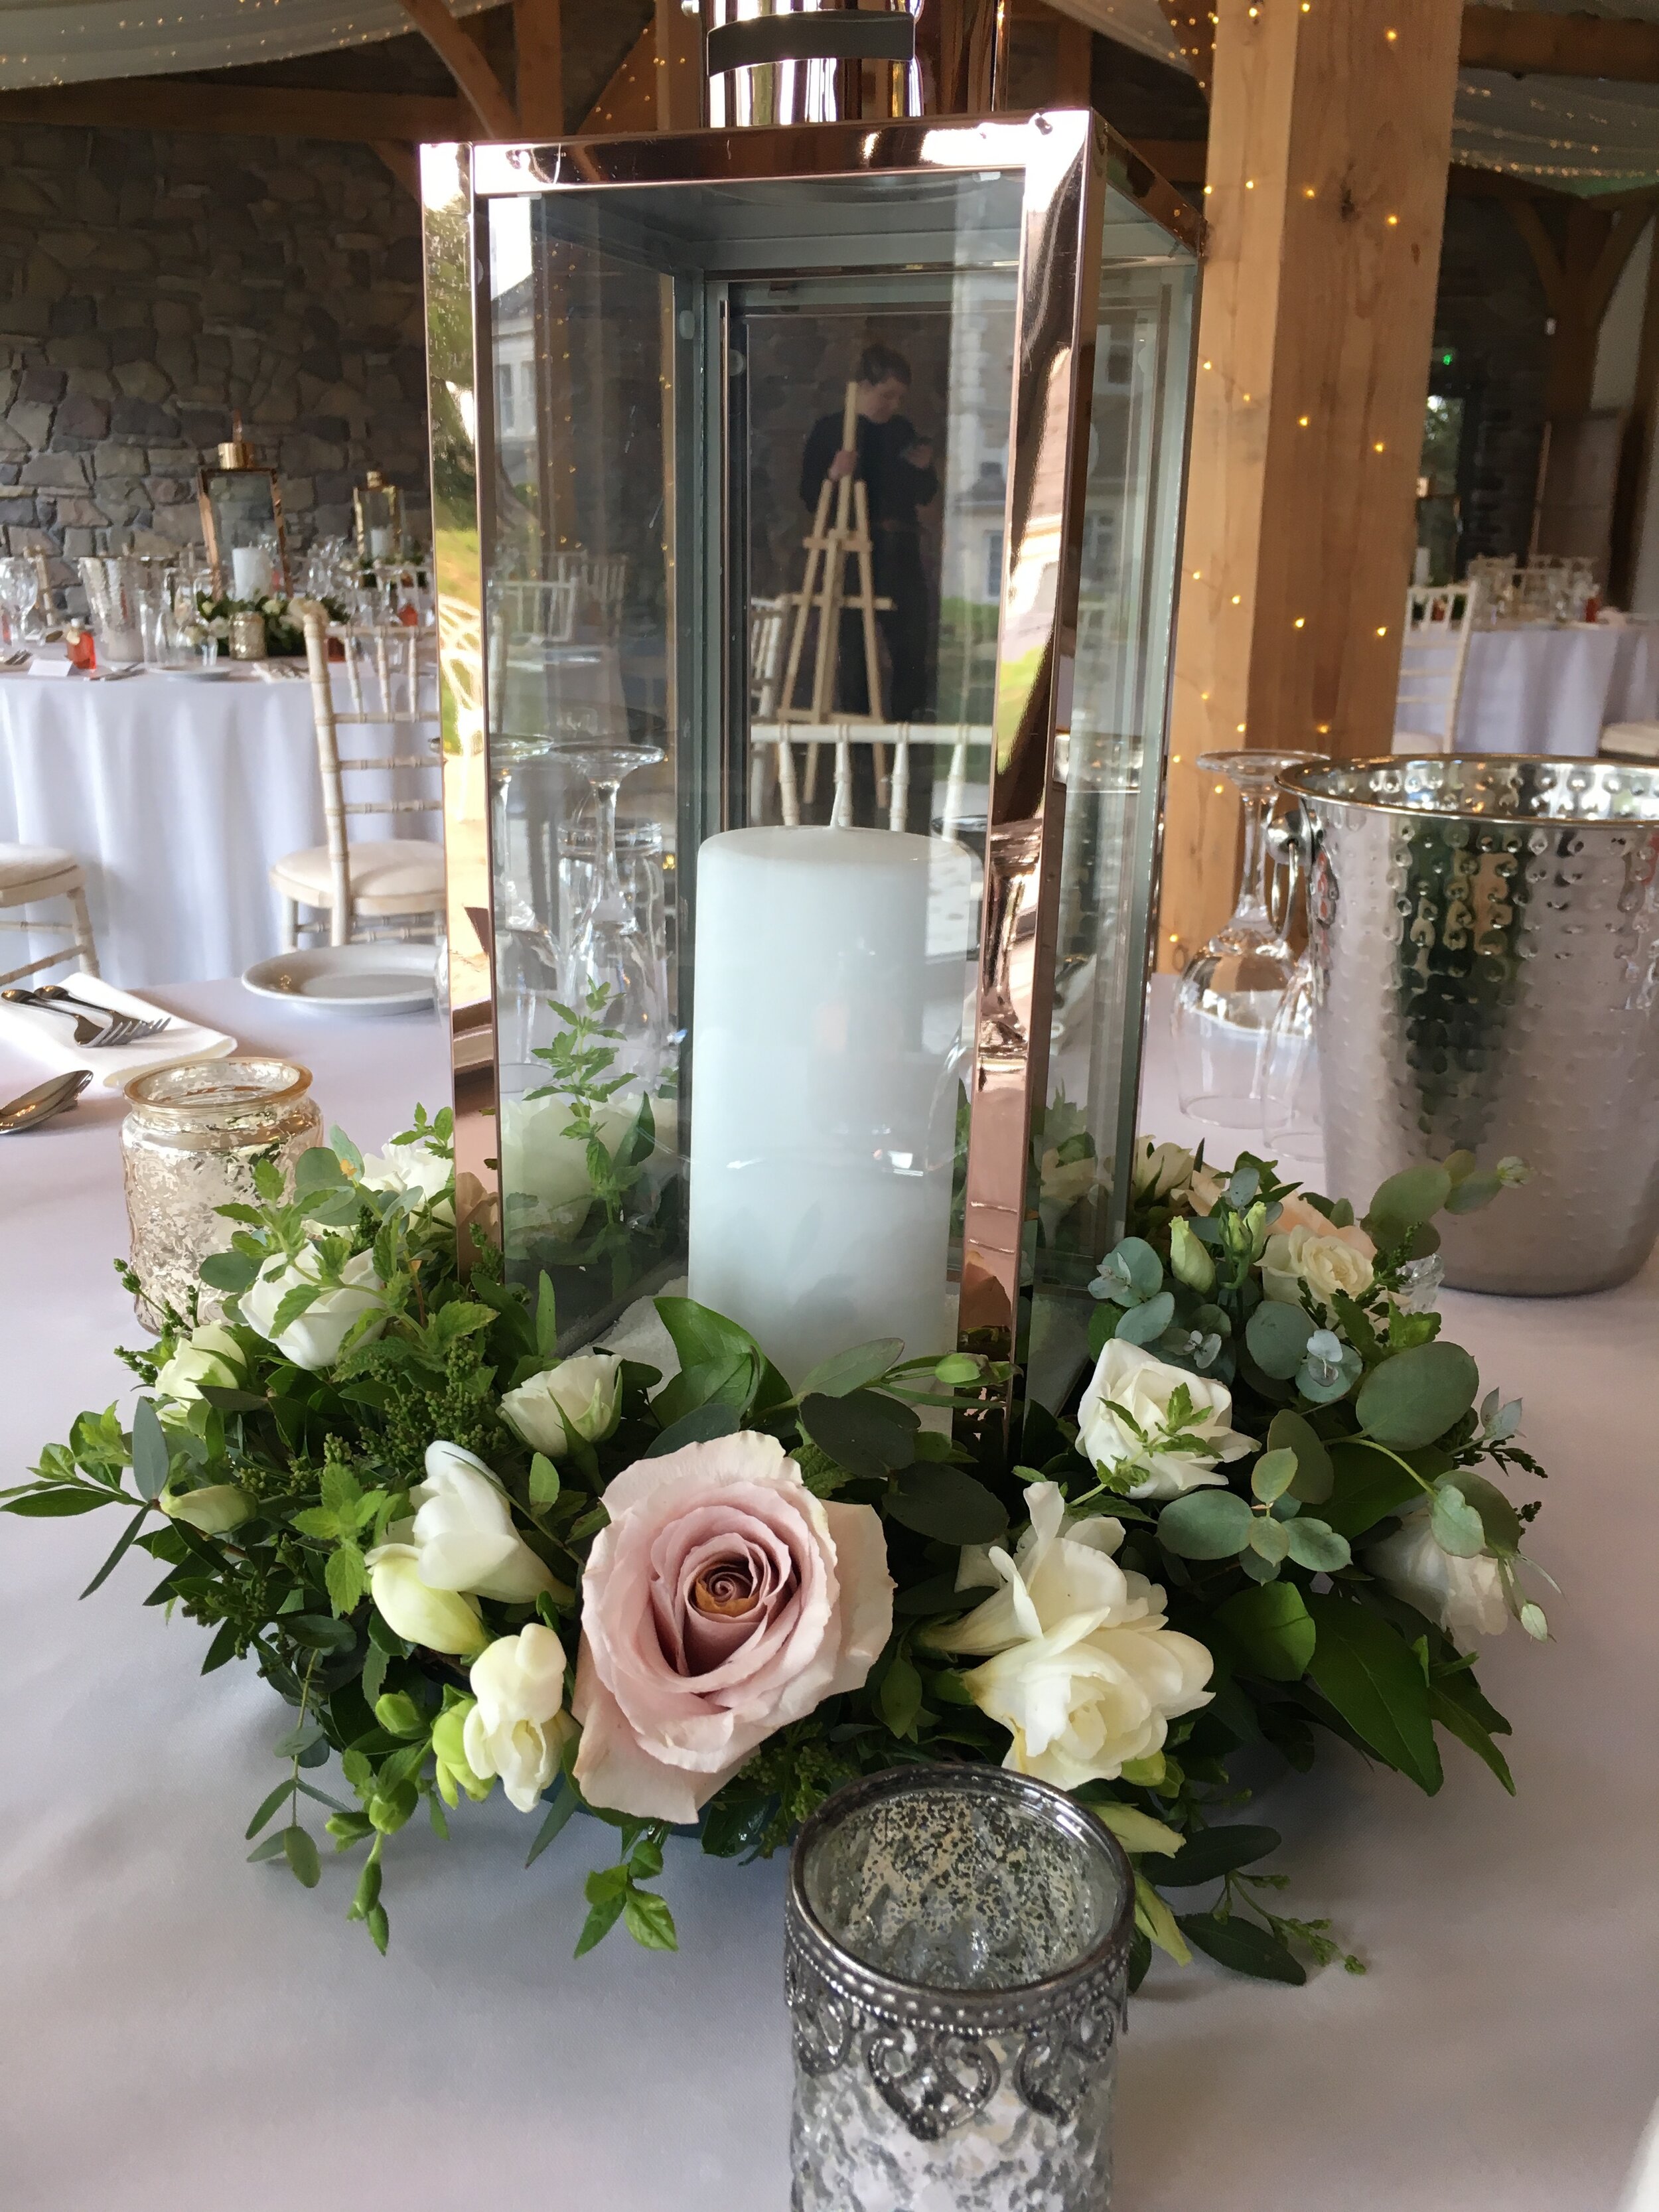 North Devon Wedding Flowers - centrepiece